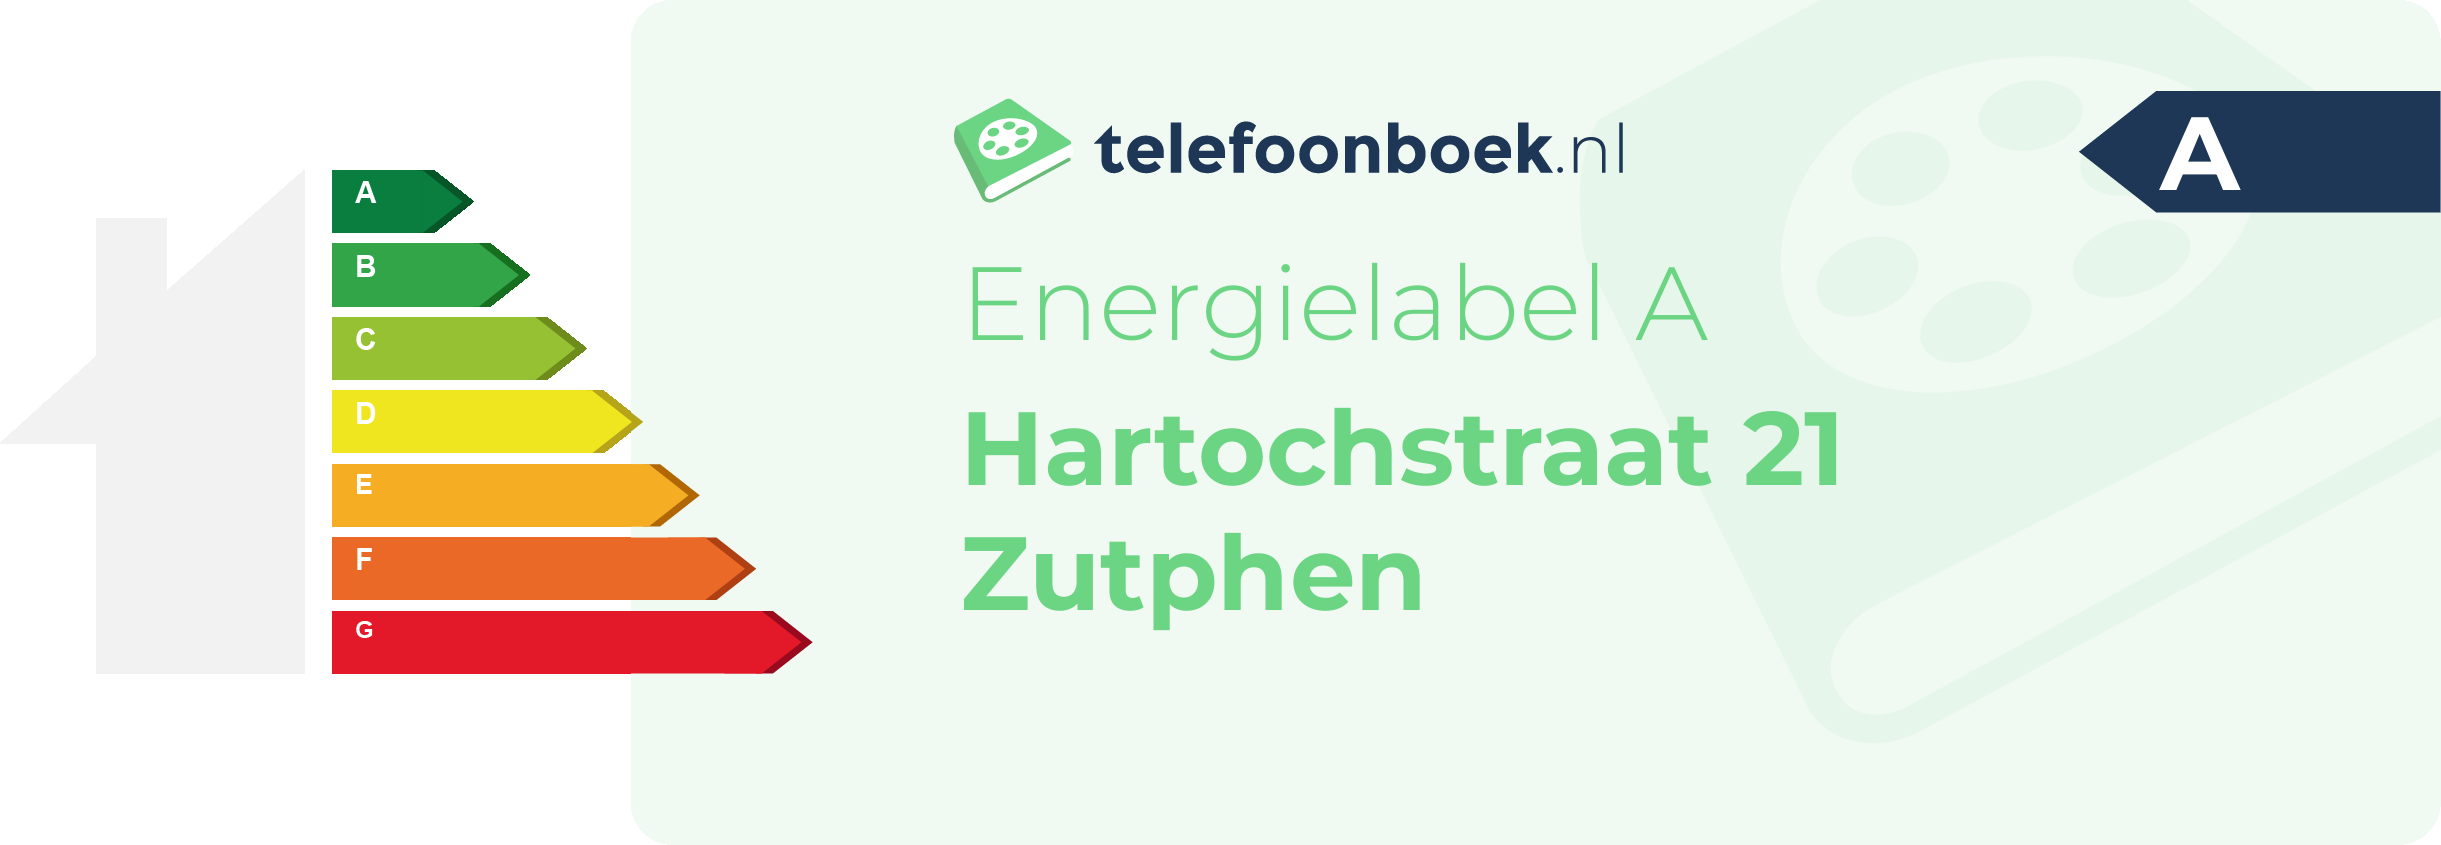 Energielabel Hartochstraat 21 Zutphen